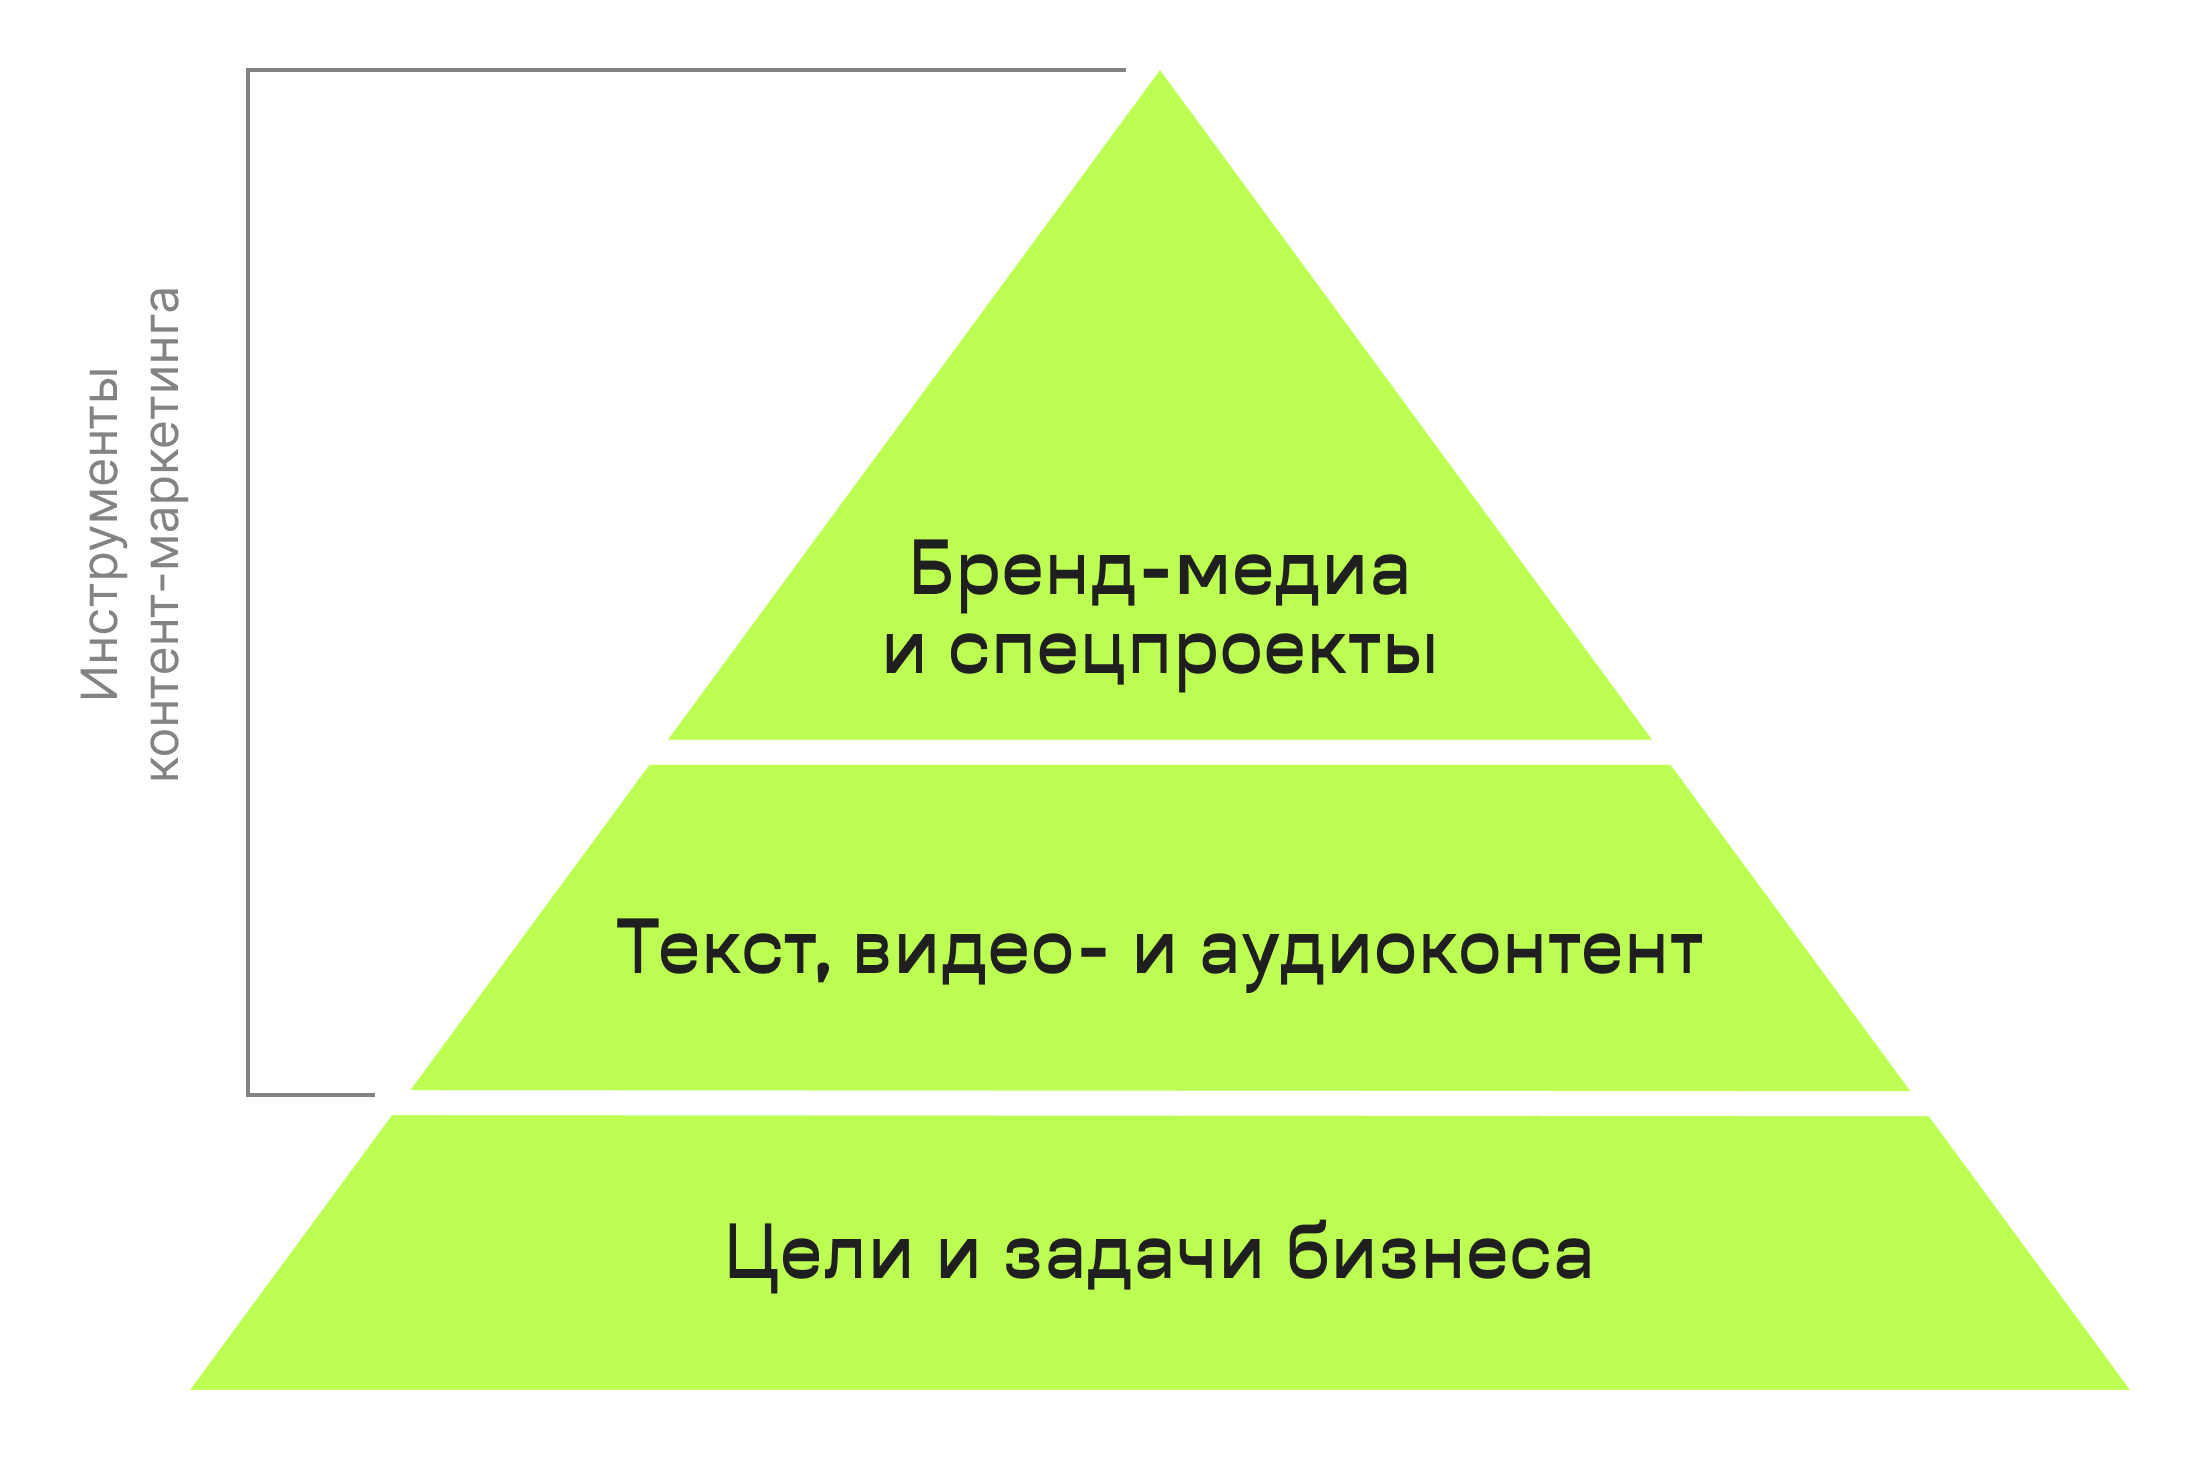 Пирамида инструментов контент-маркетинга: версия агентства «Палиндром»